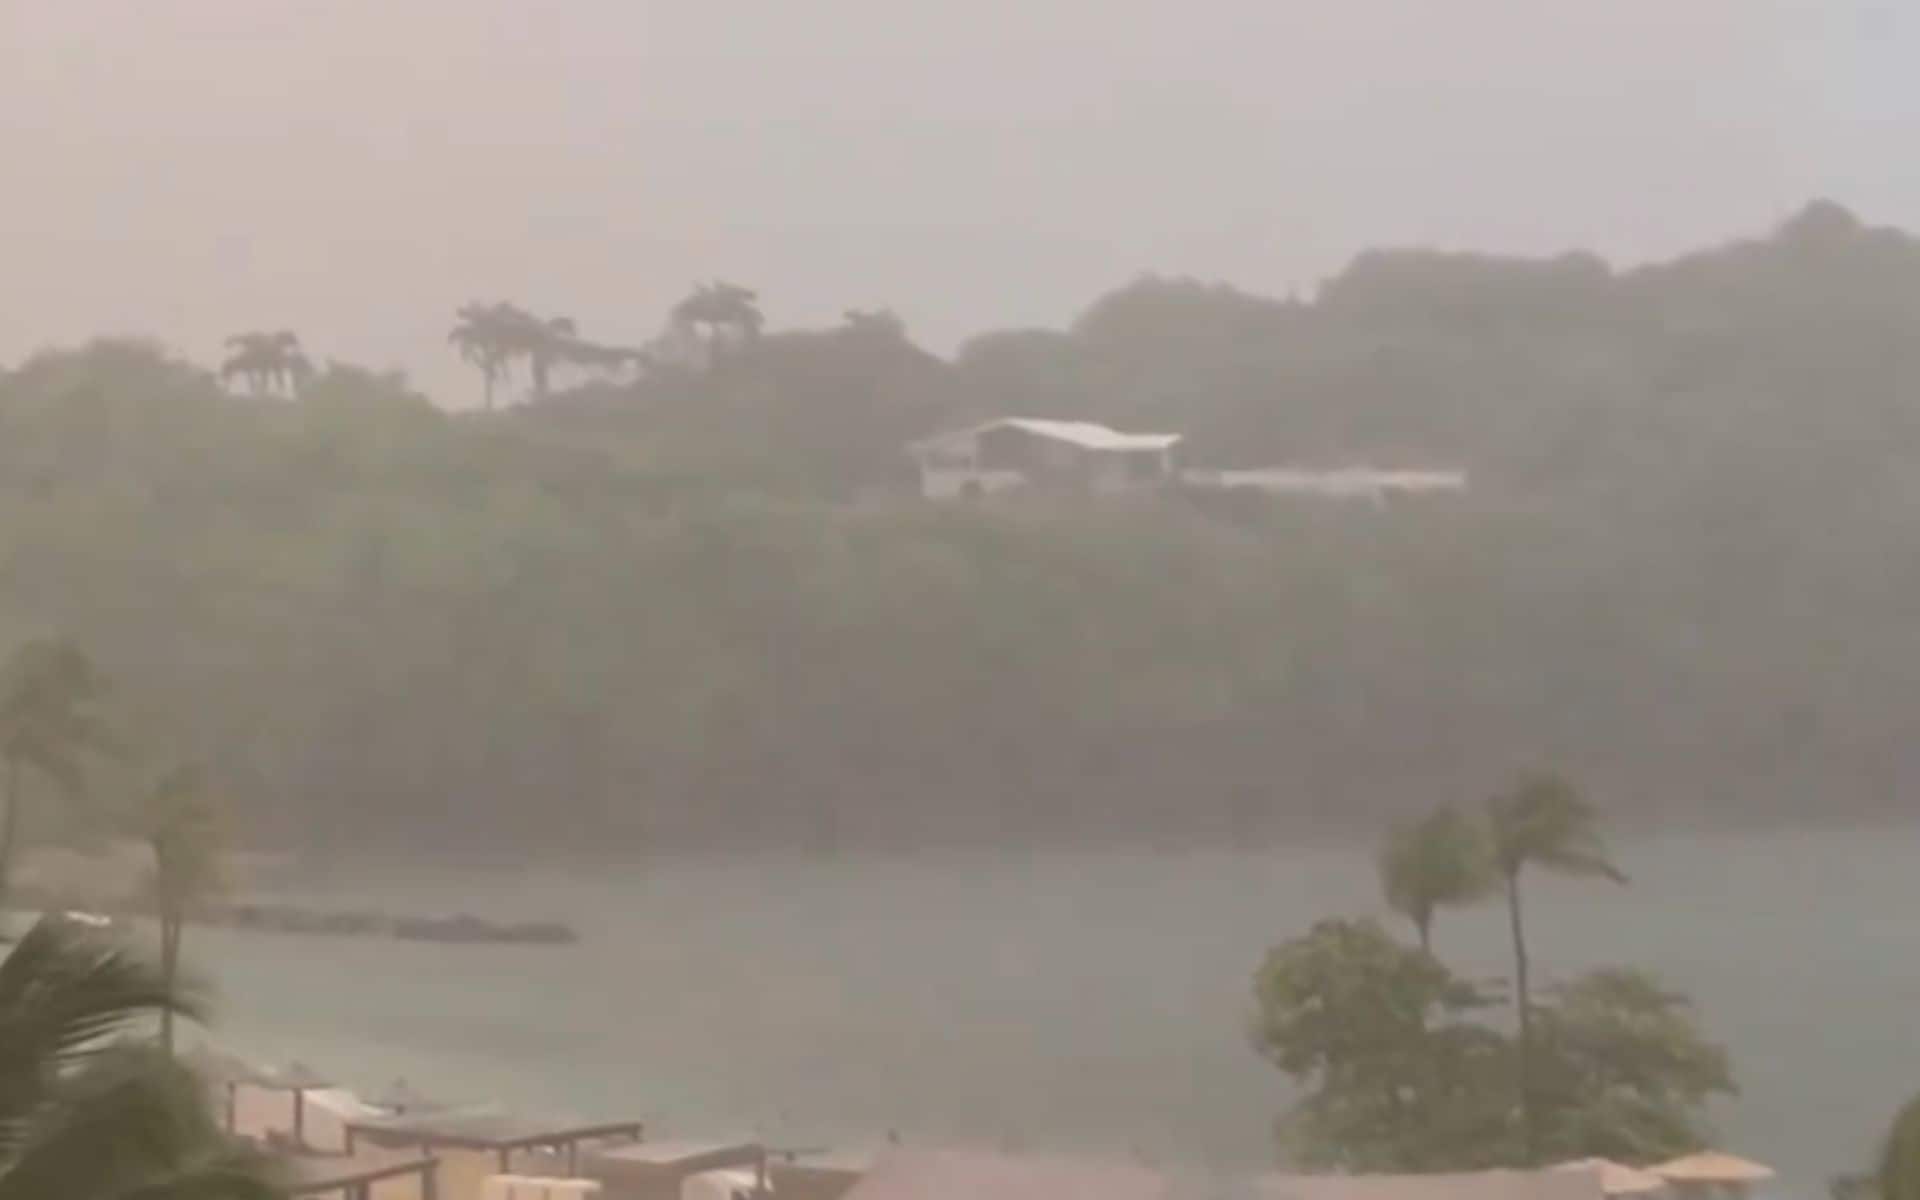 It's raining in in St. Lucia [X.com]